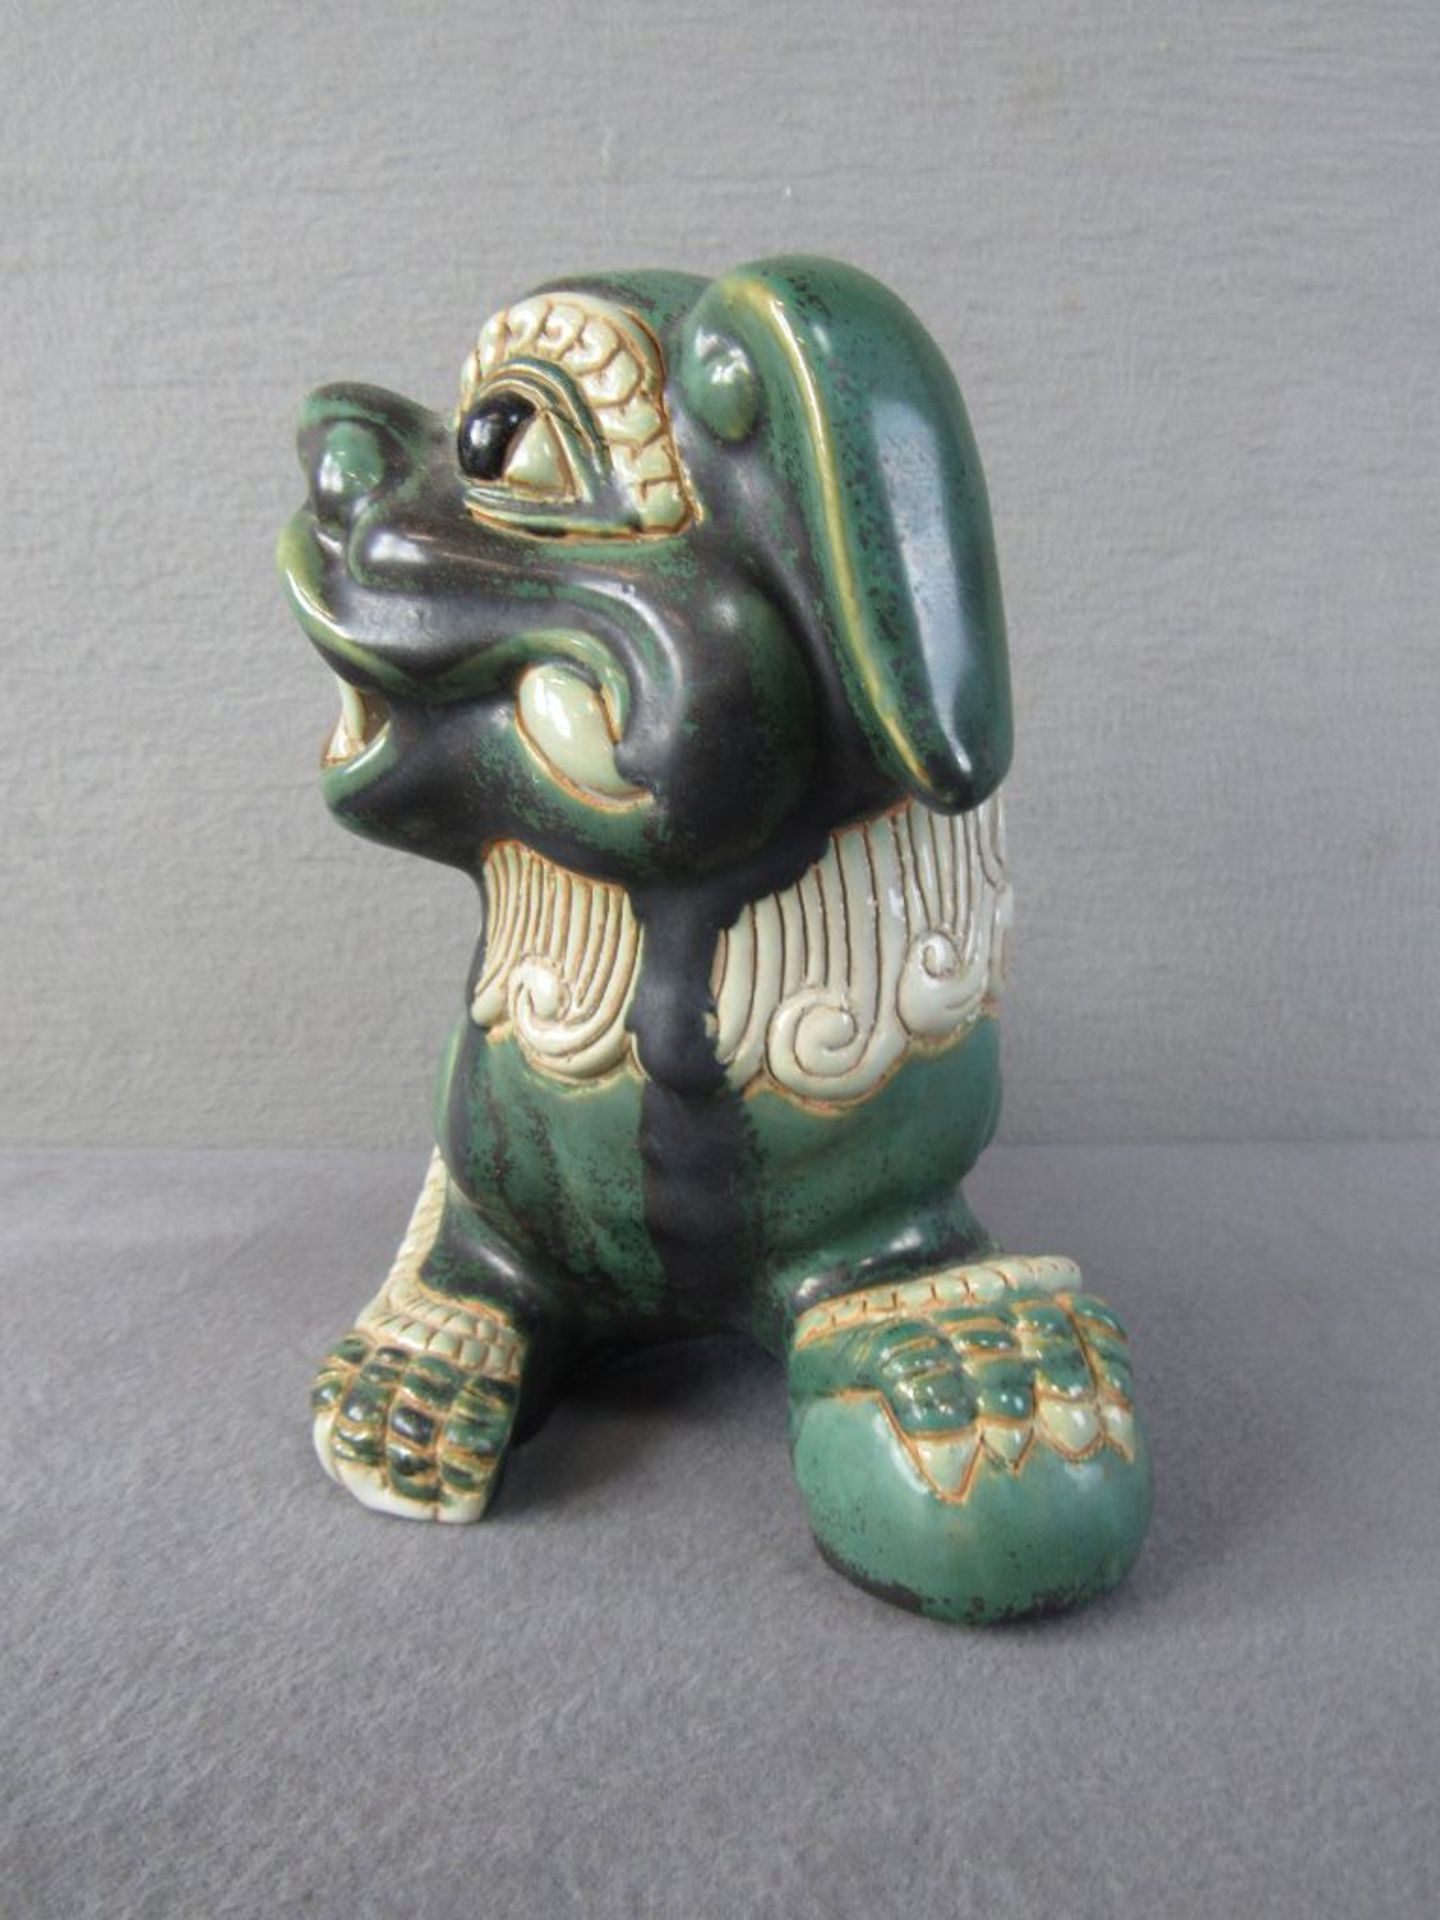 Chinesischer Fu Hund signiert Thary oder ähnlich lasierte Keramik 25cm lang - Bild 3 aus 6